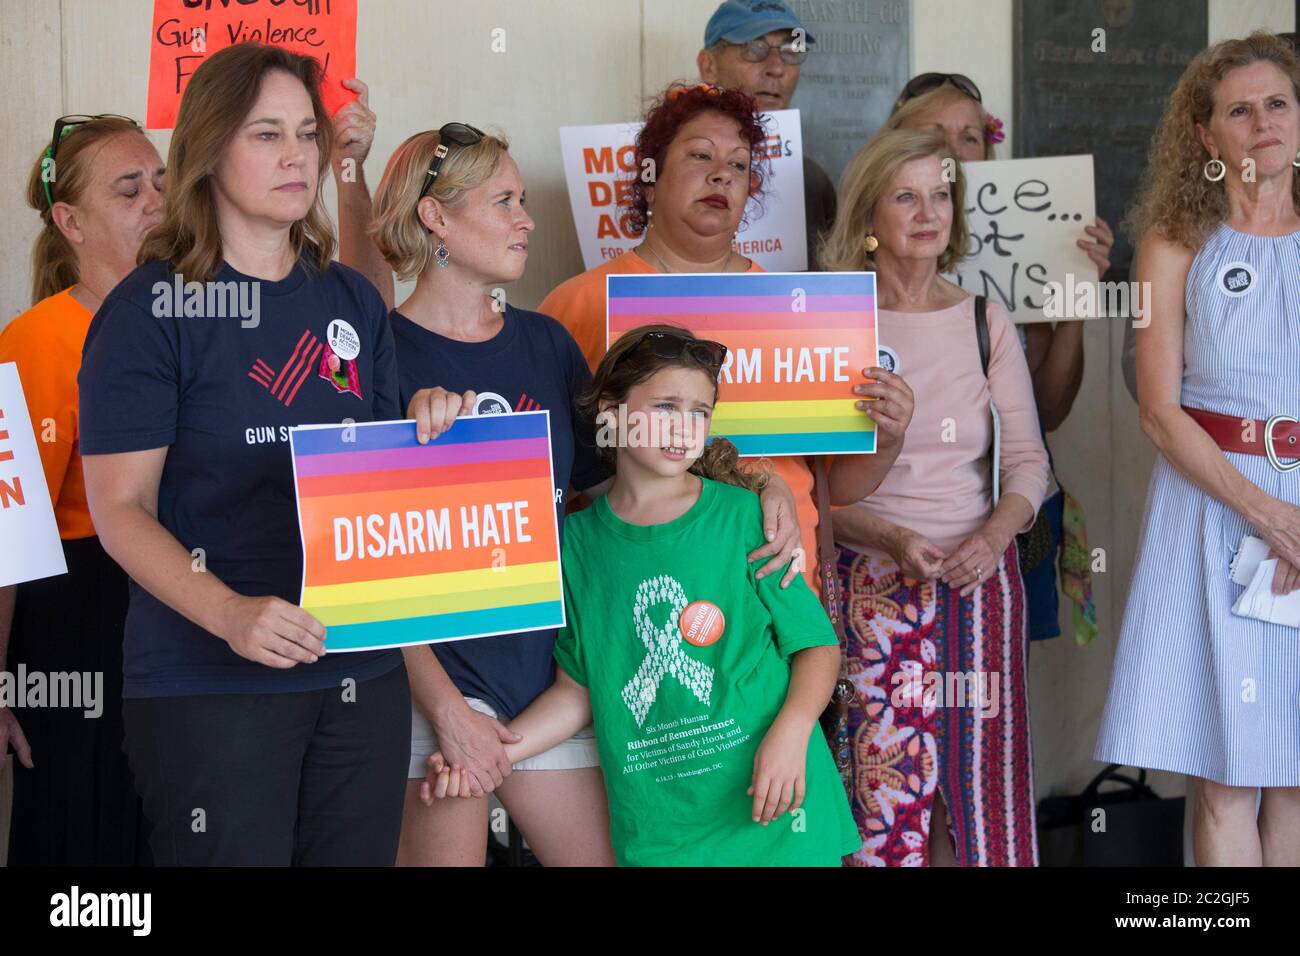 Austin Texas, USA, 29. Juni 2016: Demonstranten, die gegen die milden Waffenbeschränkungen von Texas protestieren, halten während der Kundgebung in der Nähe des Texas Capitol Schilder. ©Bob Daemmrich Stockfoto